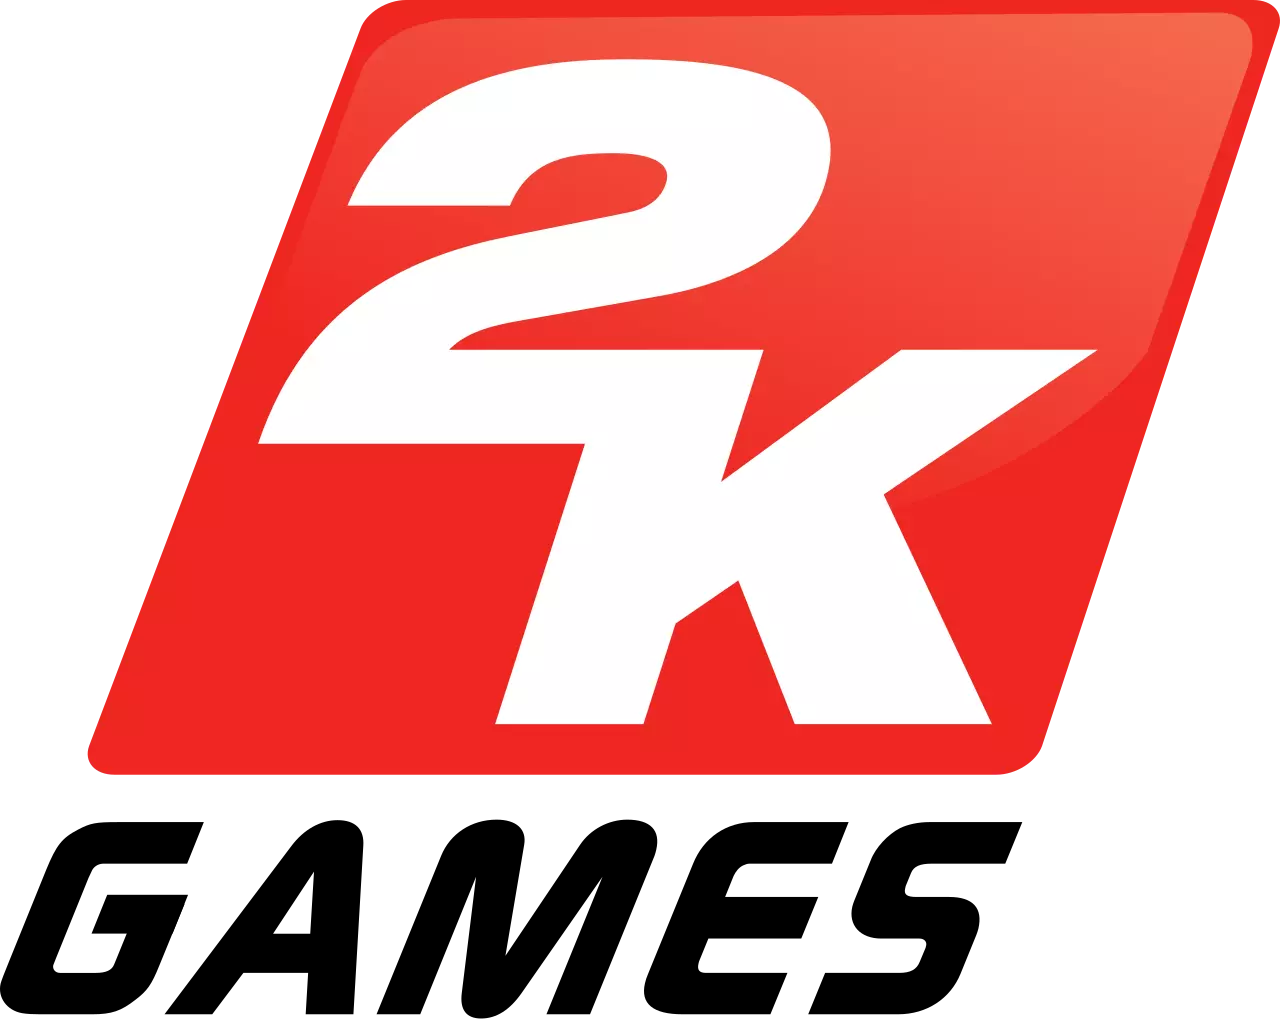 2K Games (или 2K) — дистрибьютор и издатель интерактивных игр, развлекательного программного обеспечения.